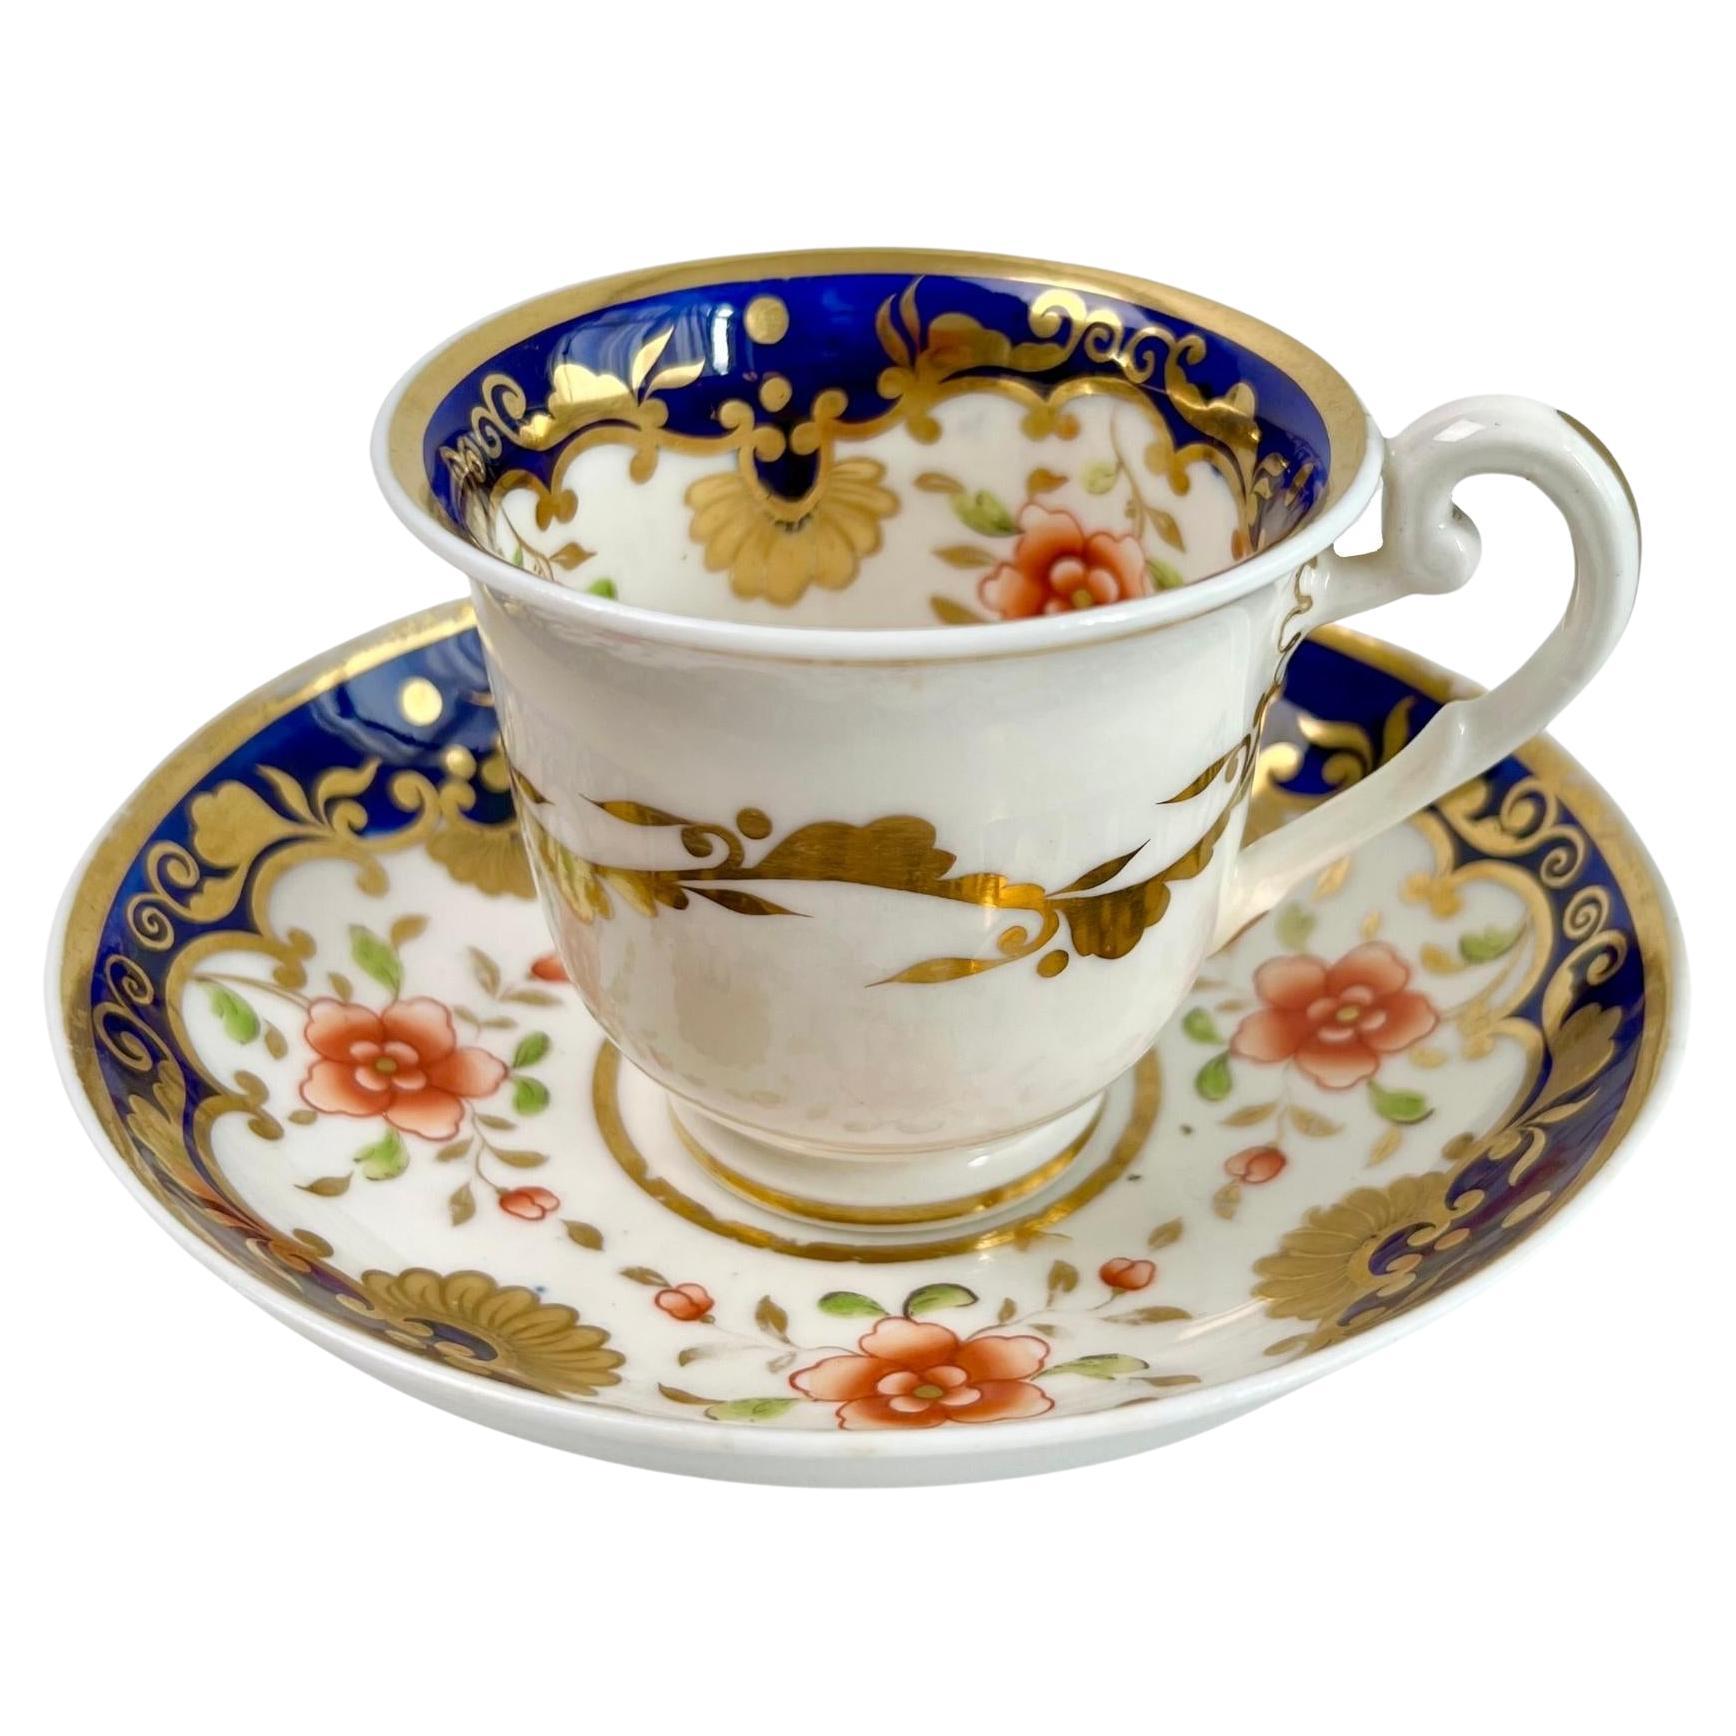 Ridgway Coffee Cup, Cobalt Blue with Orange Flowers, Regency ca 1820